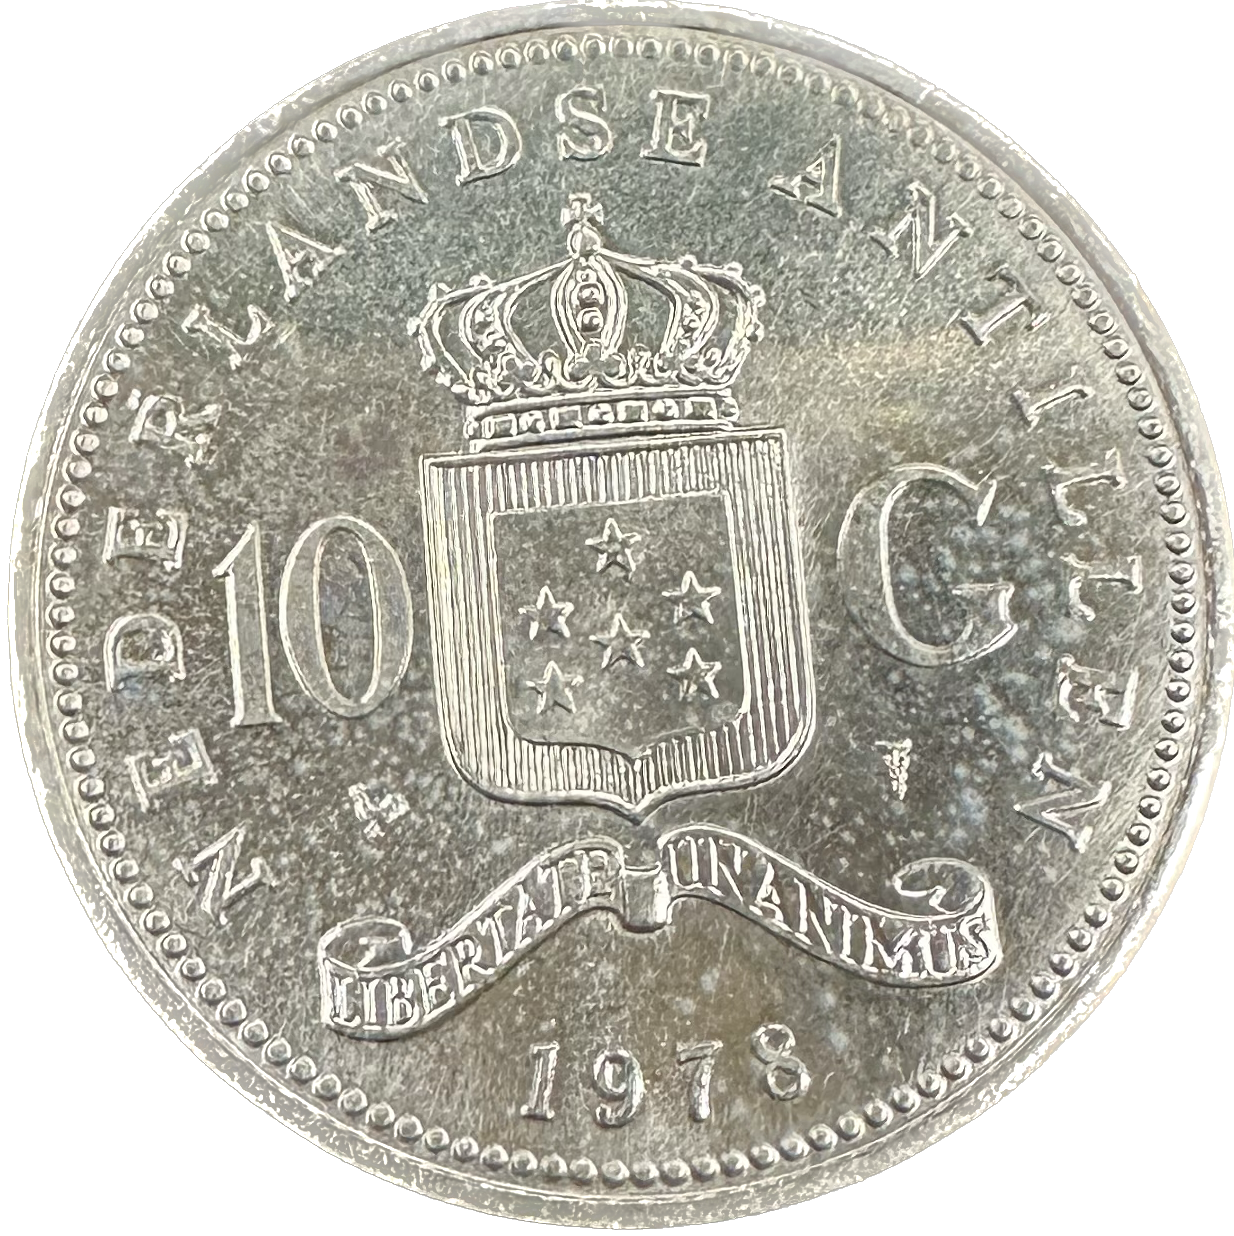 Netherlands Antilles 10 Gulden 1964 Julianna 25.0gr 72% 0.5787 oz ASW Coin